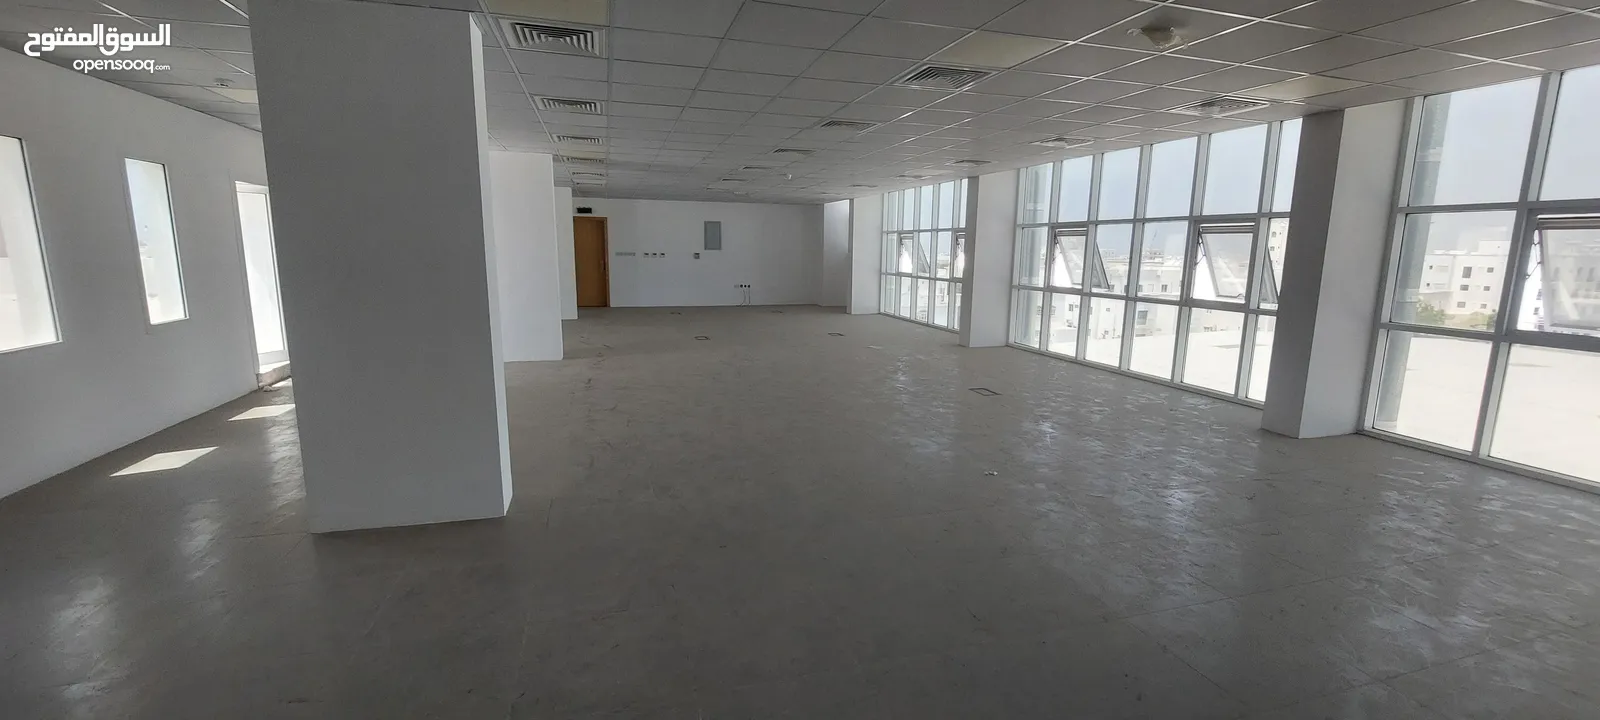 طابق كامل تجاري مساحة مفتوحة في العذيبة_Full floor commercial open space in Al Athaiba